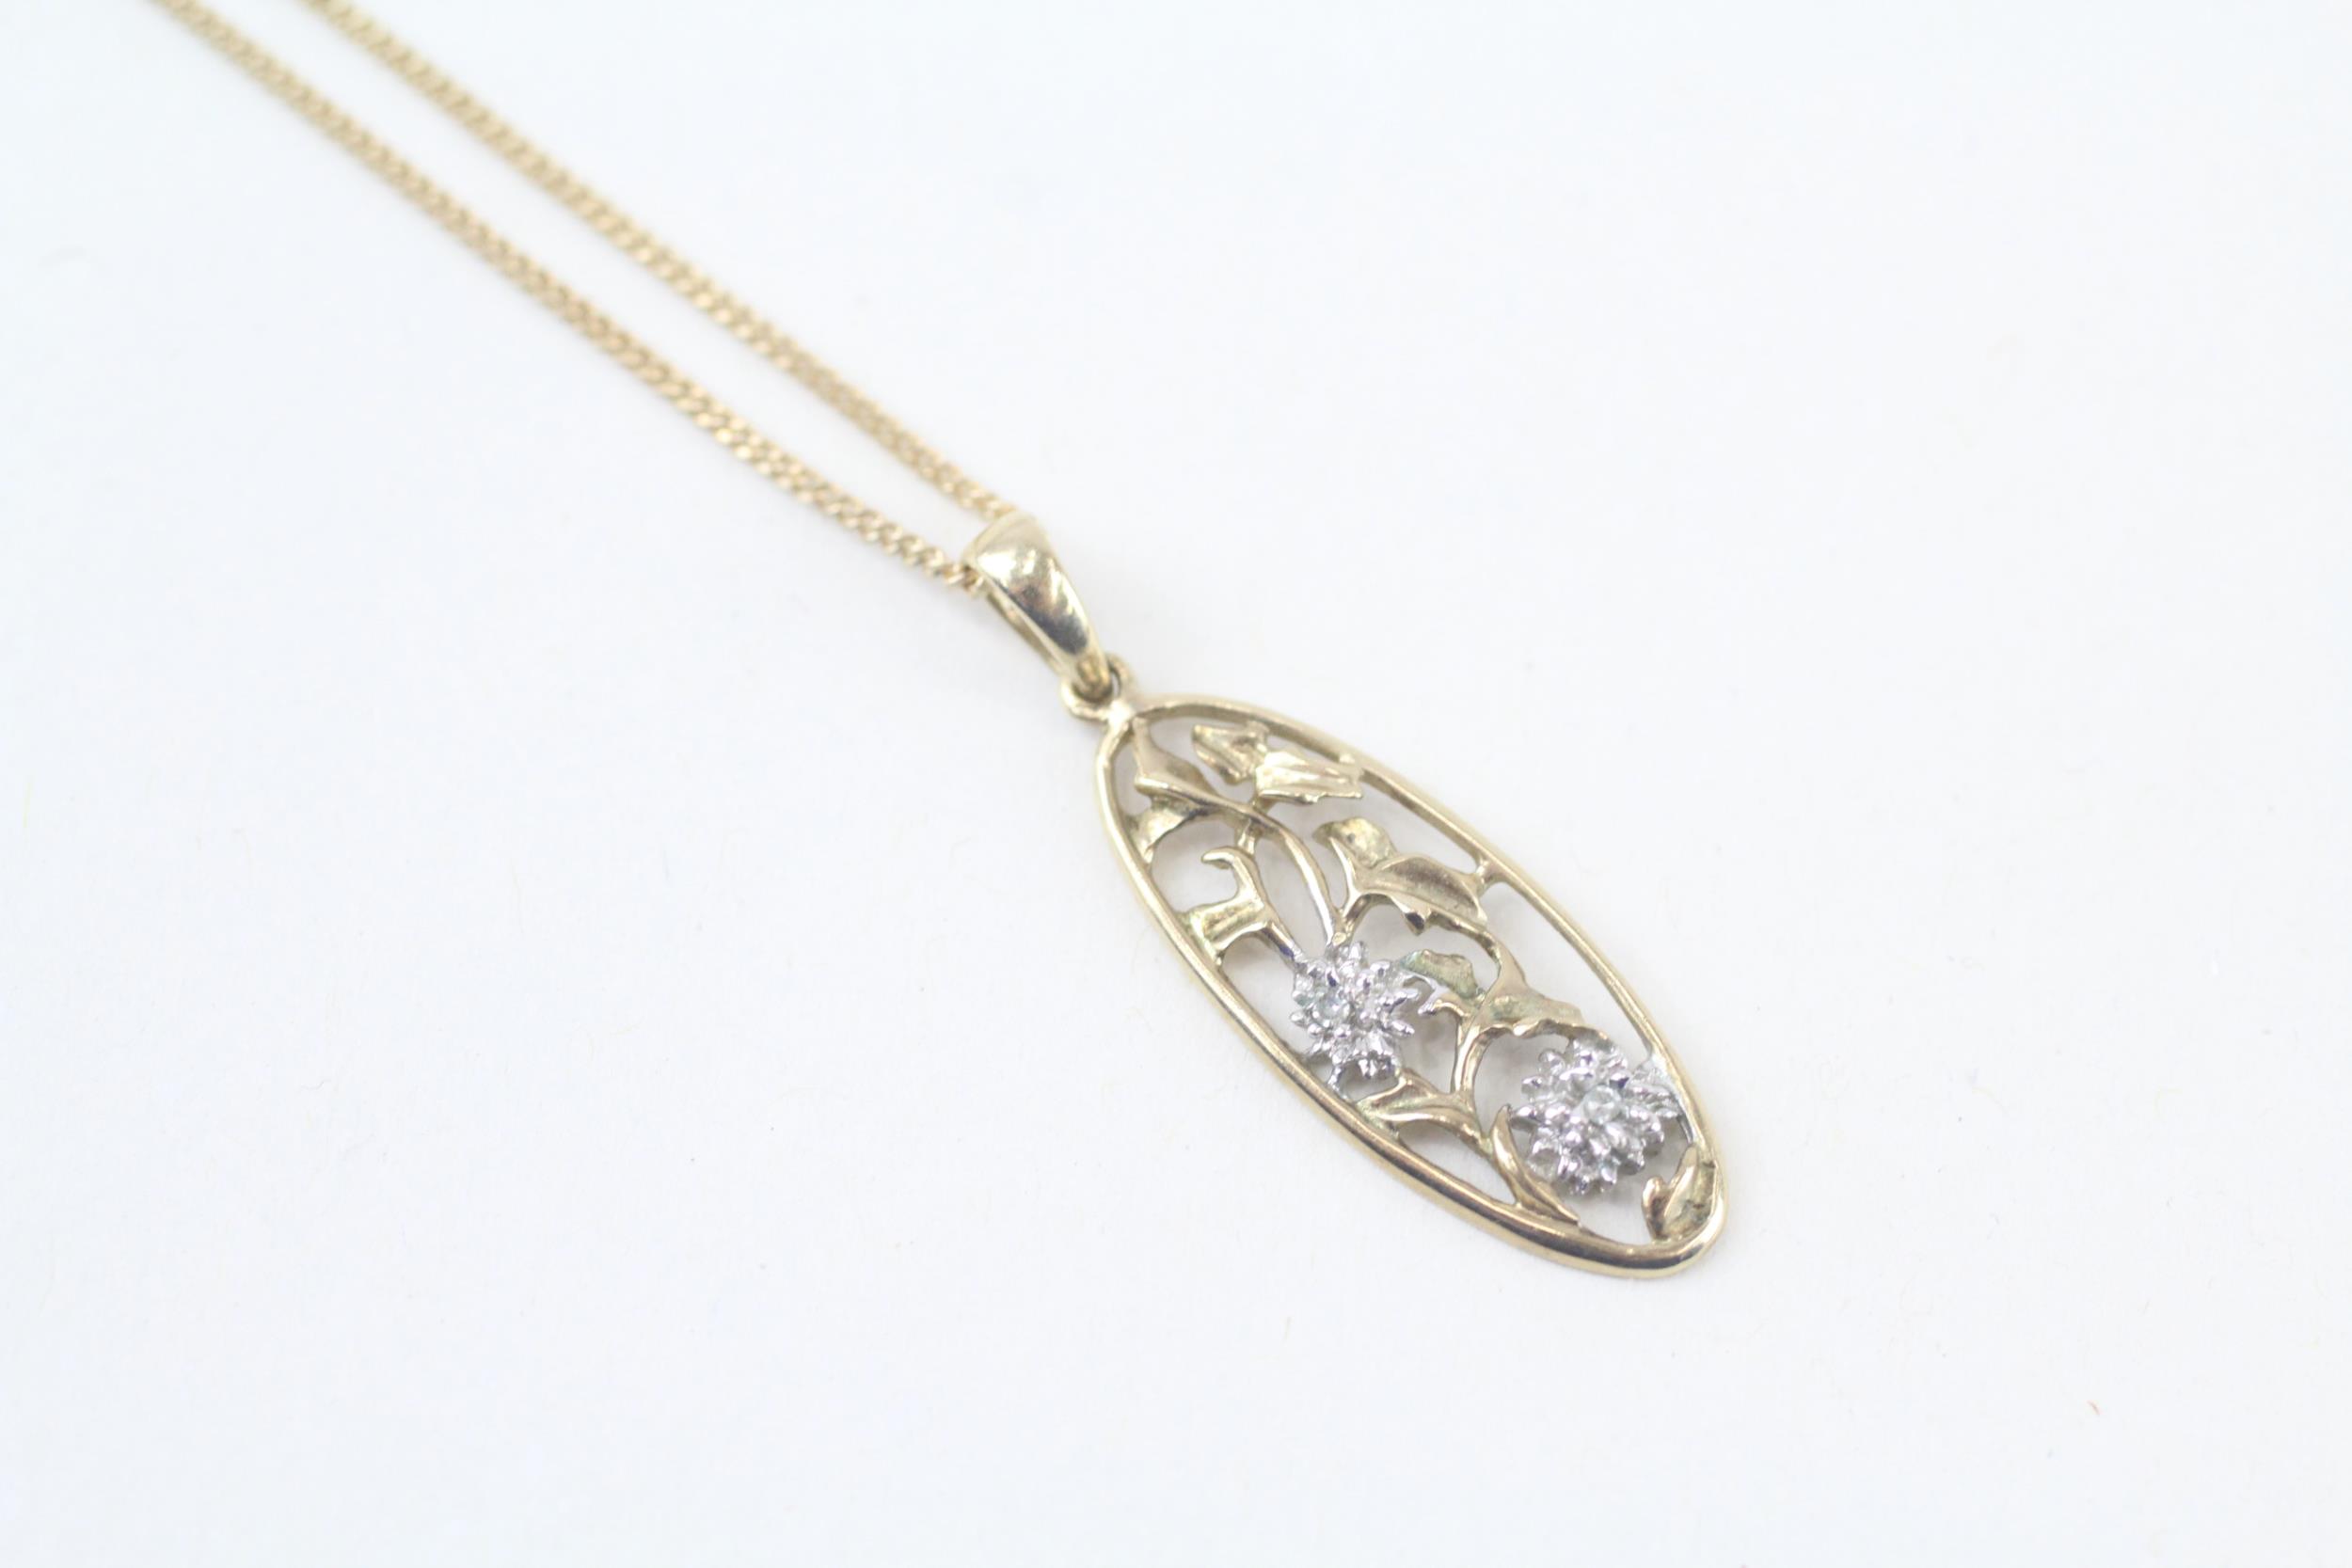 9ct gold diamond set floral pendant necklace (2.4g)